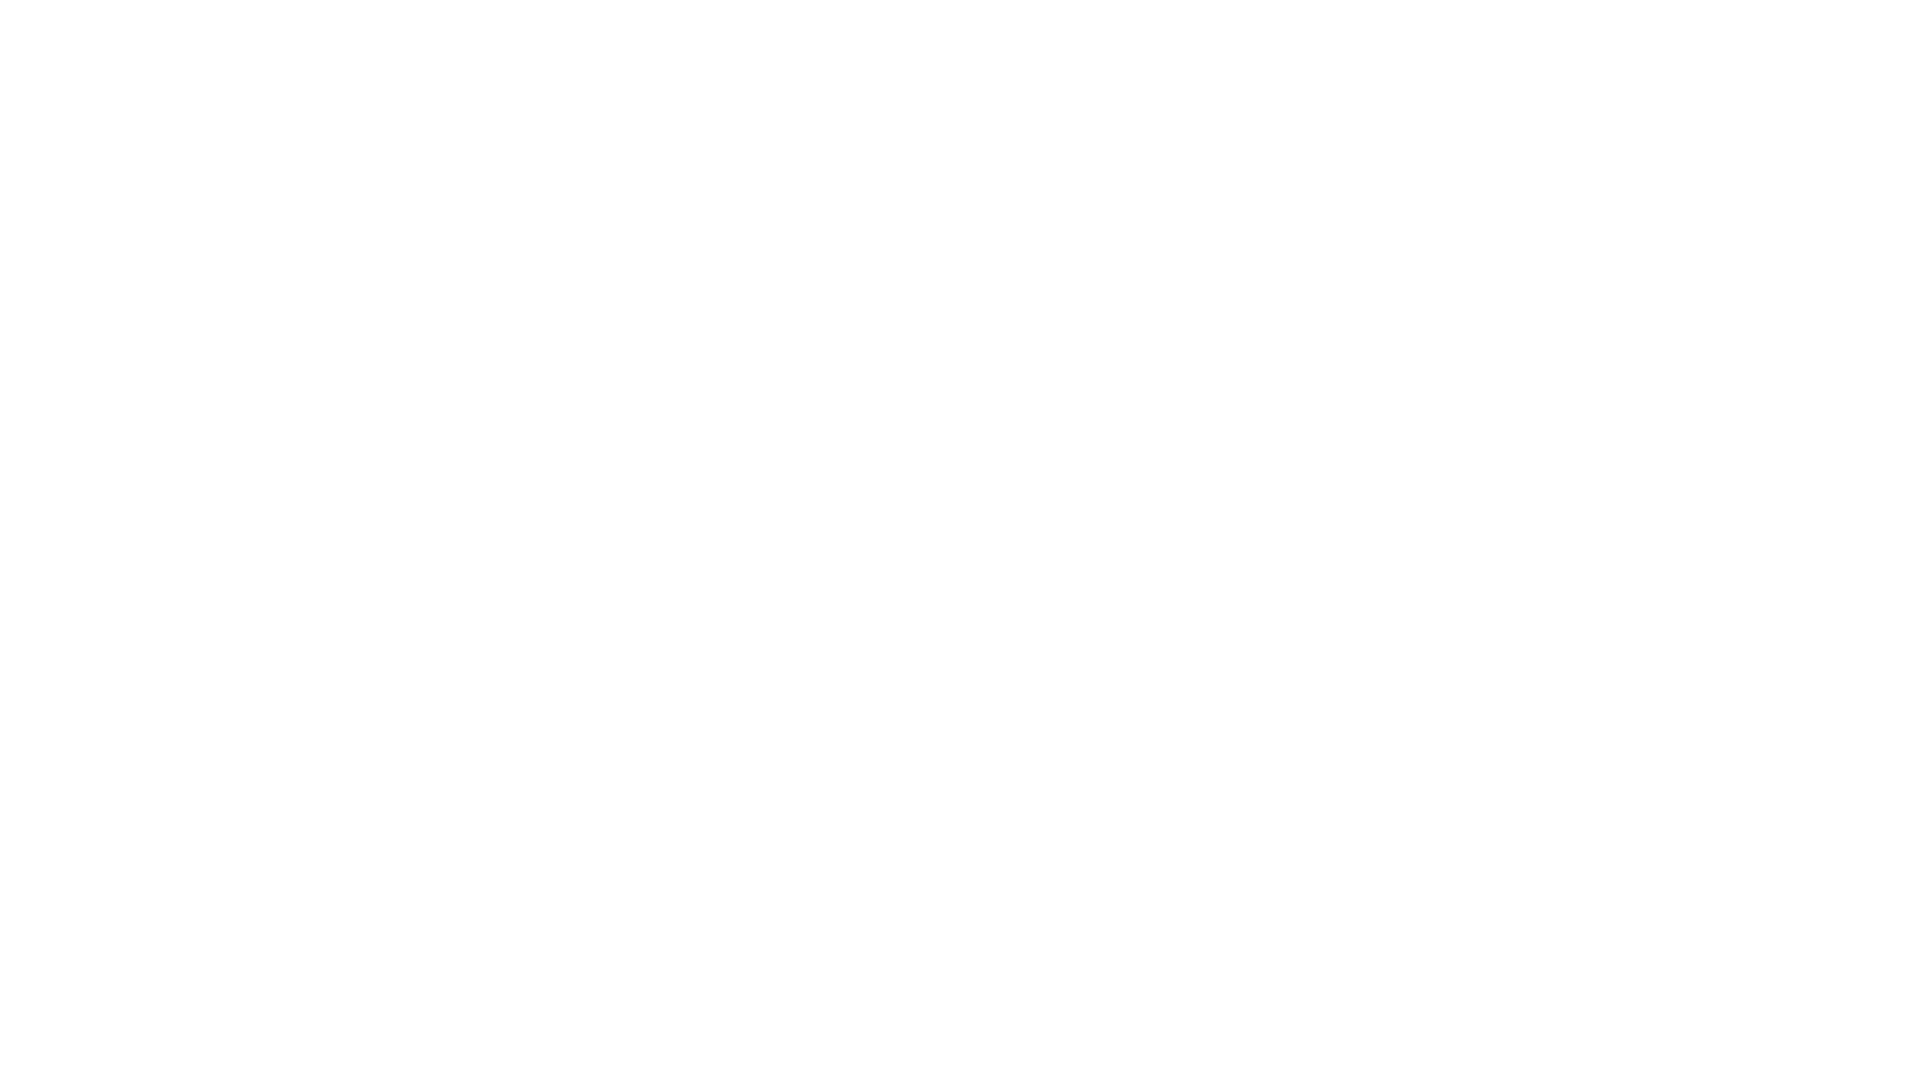 thecommunityteacher.com